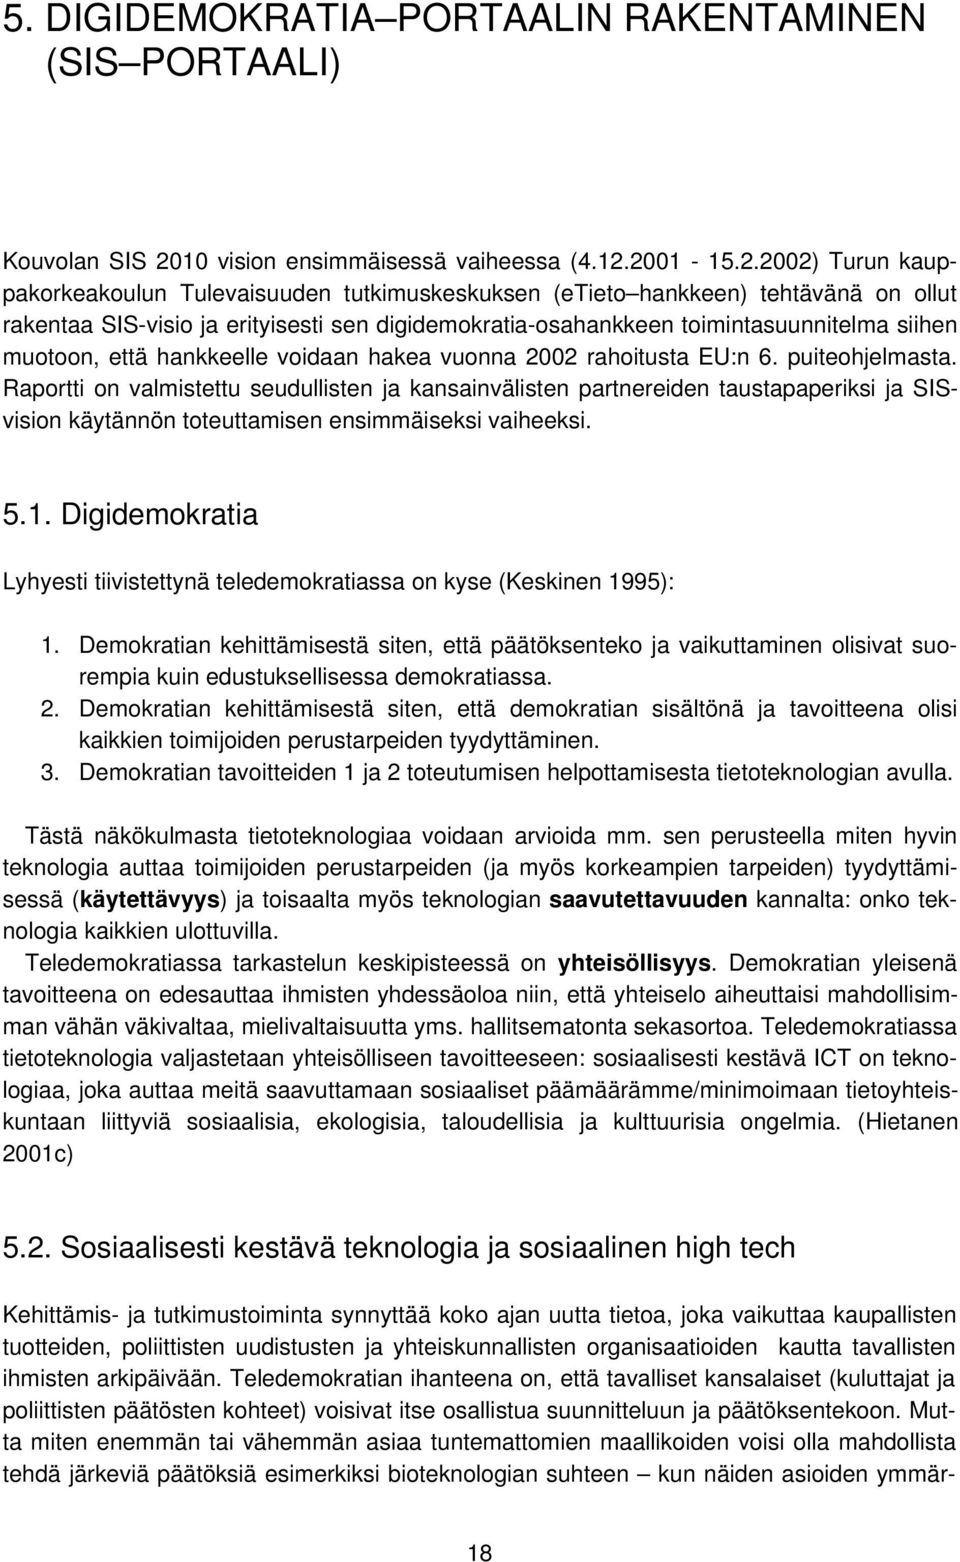 2001-15.2.2002) Turun kauppakorkeakoulun Tulevaisuuden tutkimuskeskuksen (etieto hankkeen) tehtävänä on ollut rakentaa SIS-visio ja erityisesti sen digidemokratia-osahankkeen toimintasuunnitelma